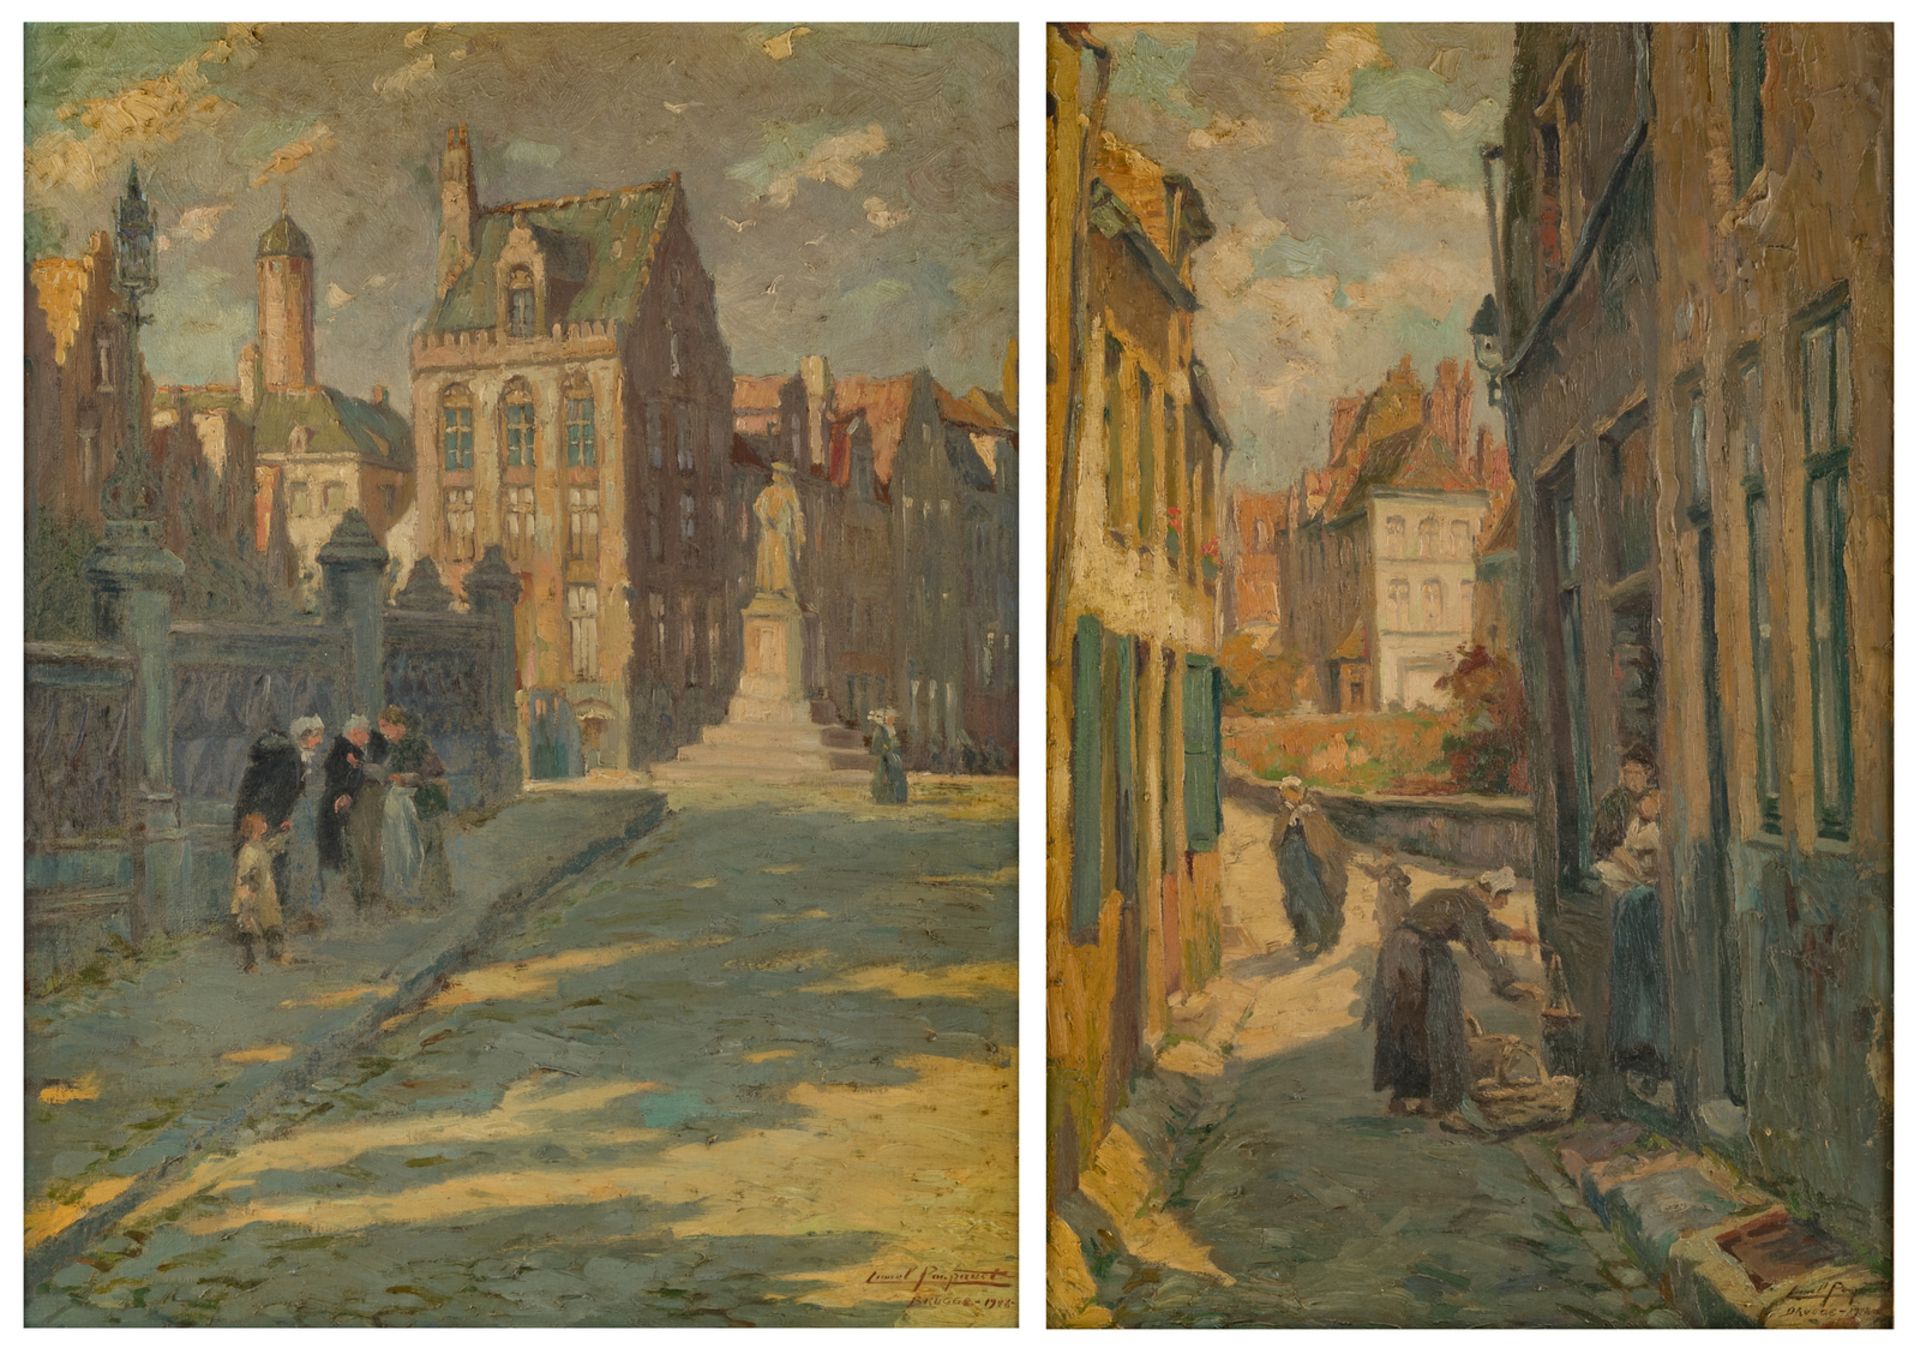 Poupaert L., two rare city views of Bruges, oil on canvas, 1928/1946, 56 x 85 cm / 65,5 x 85 cm